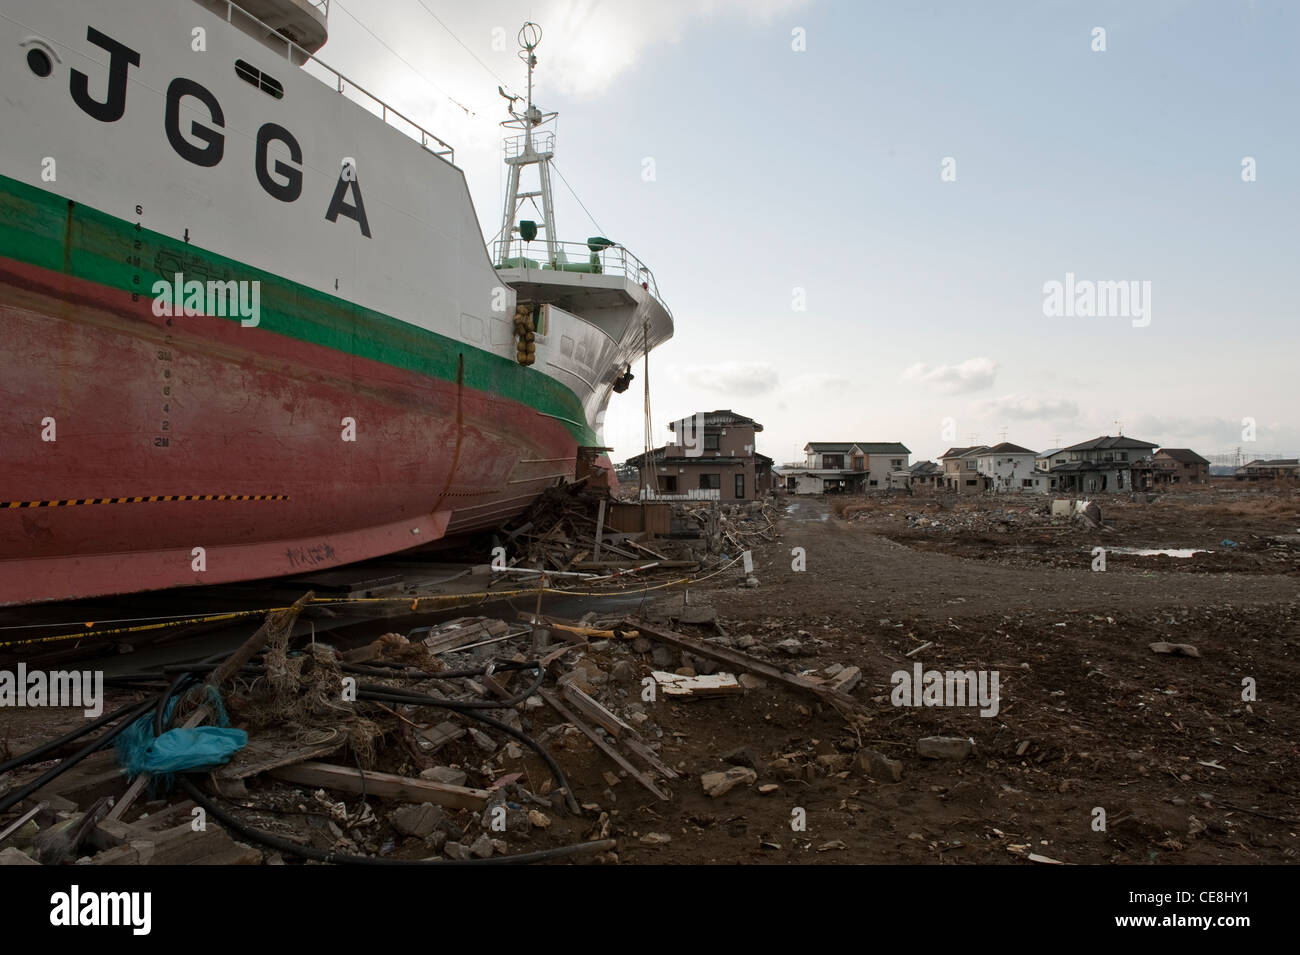 1° anniversario della giapponese tsunami approcci, tsunami i danni nella regione mayagi - ishinomaki town & Sendai. Foto Stock